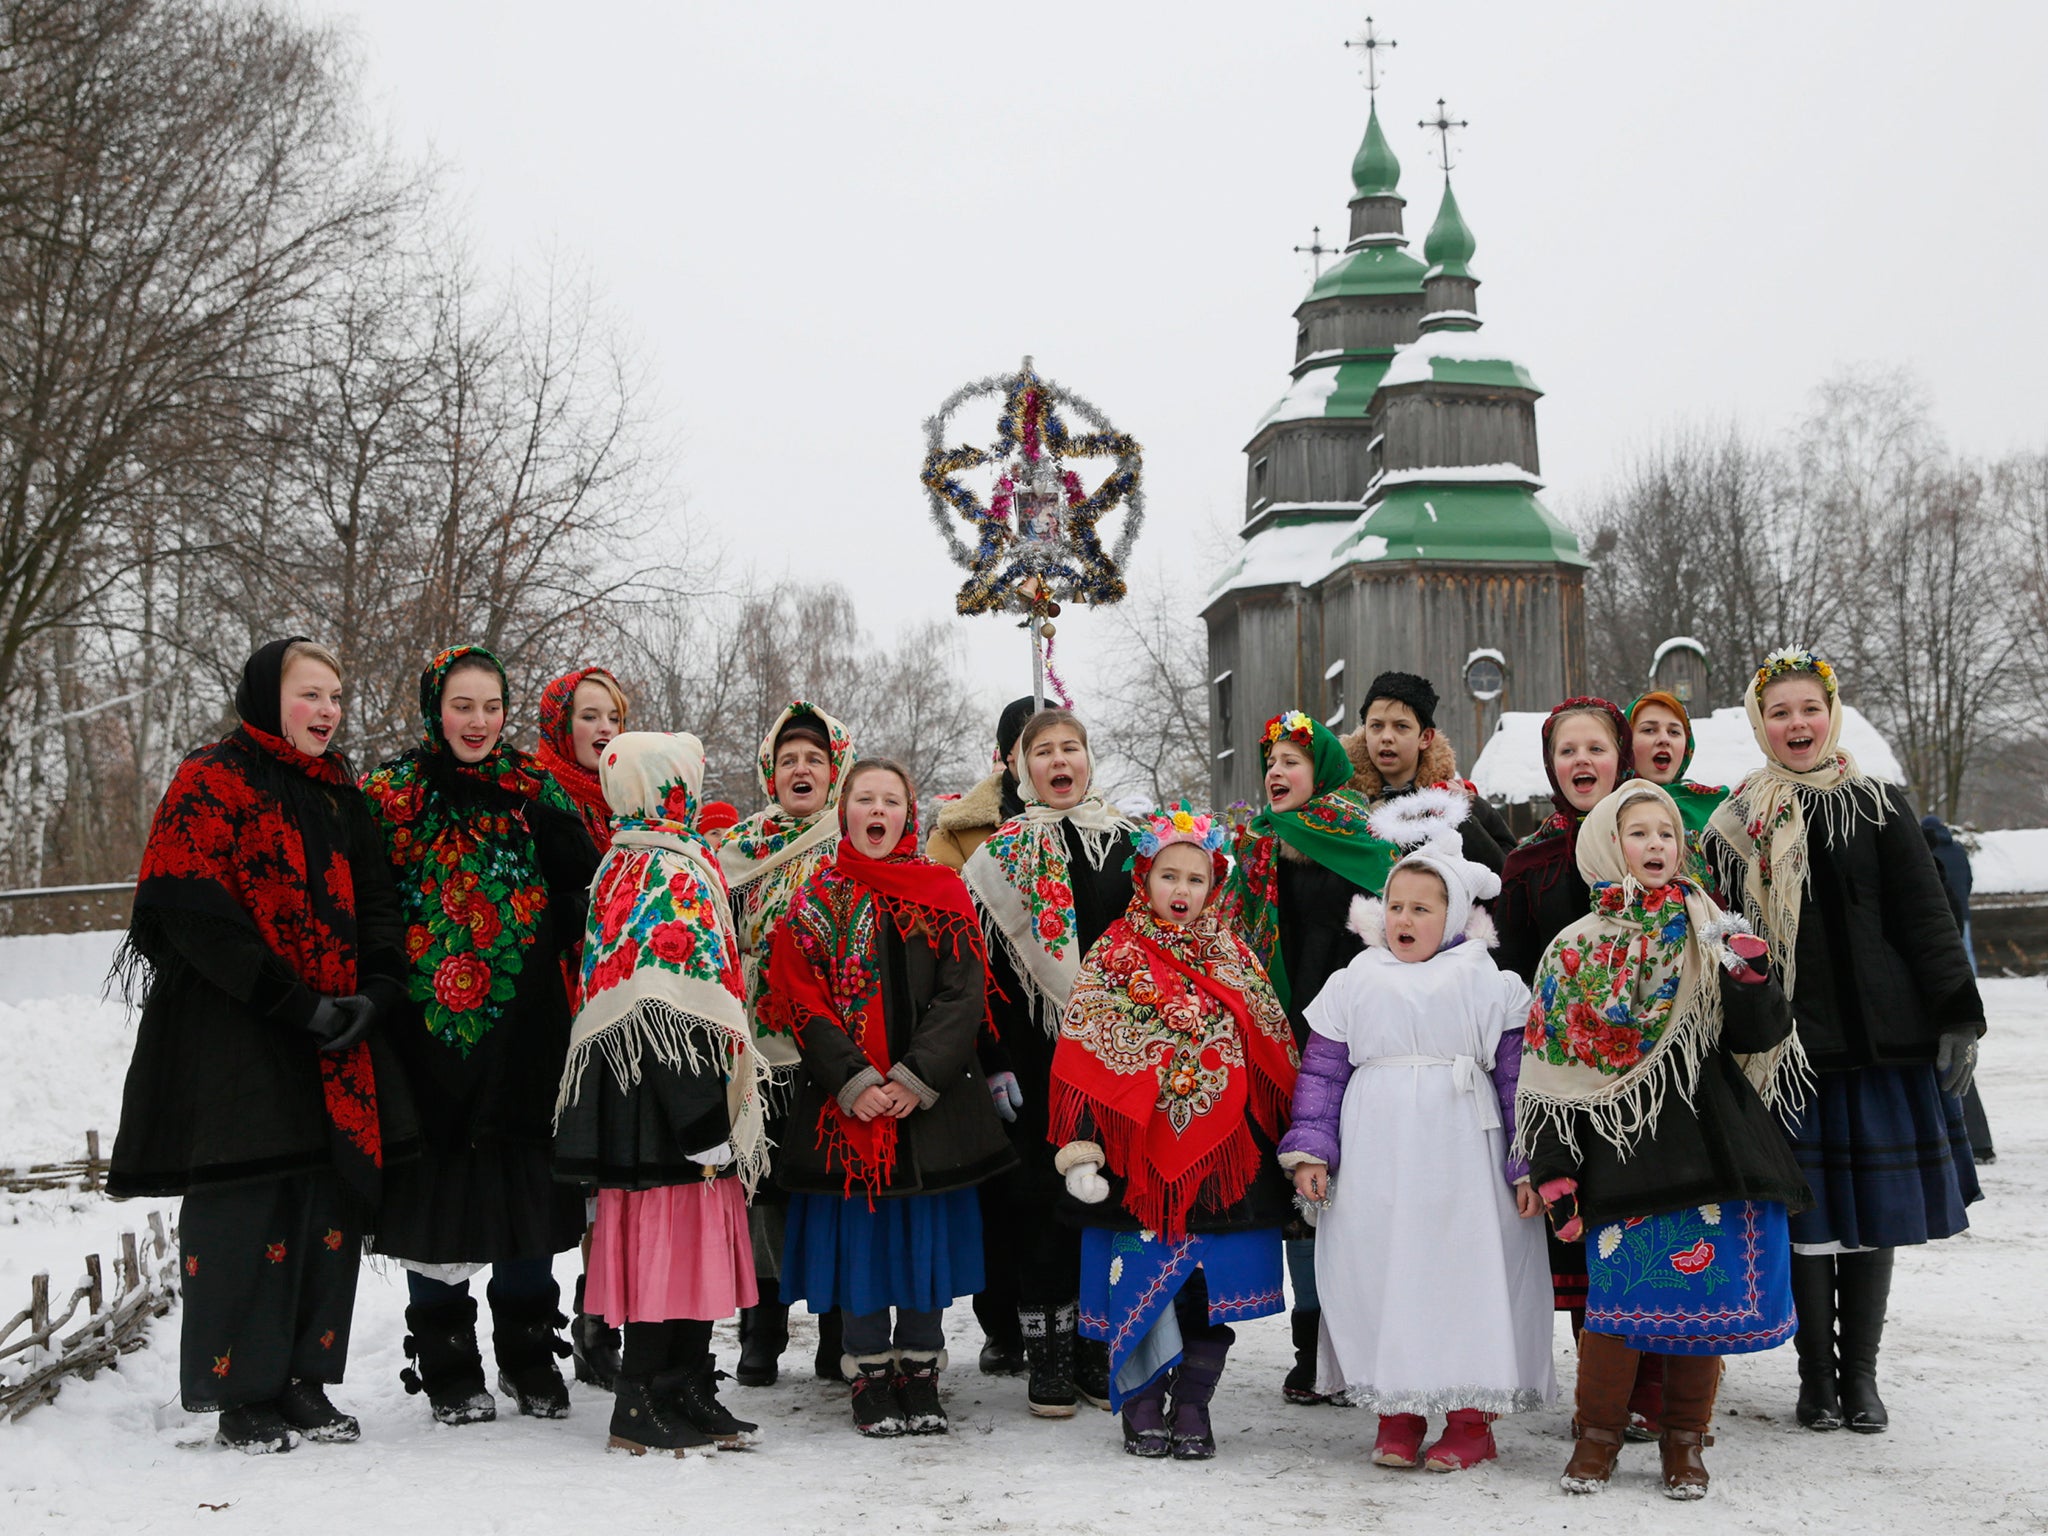 People dressed in traditional costumes sing Christmas carols in Kiev